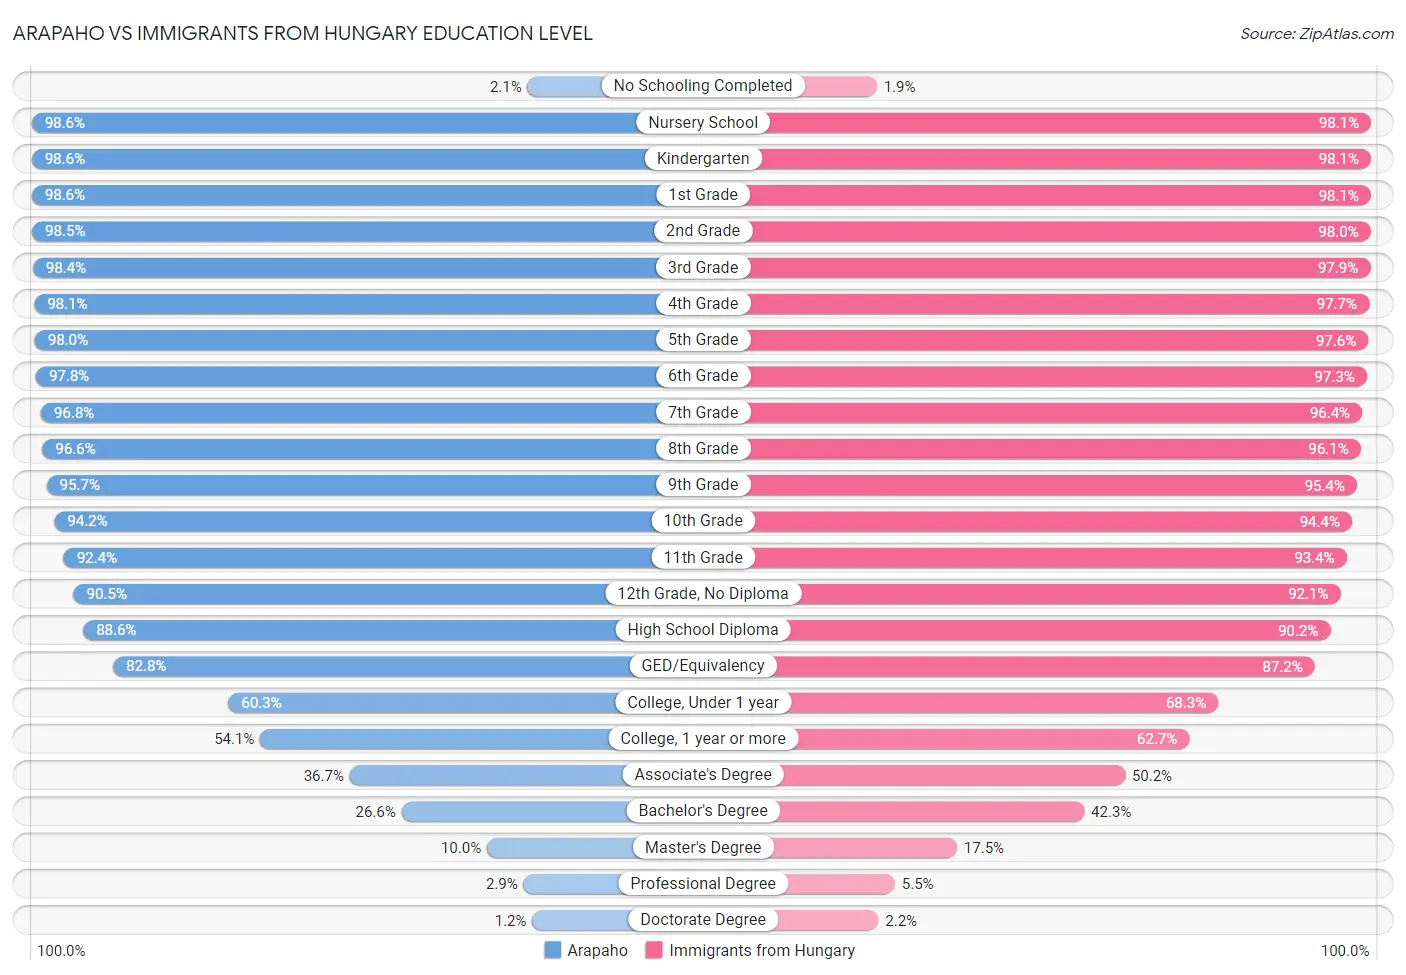 Arapaho vs Immigrants from Hungary Education Level